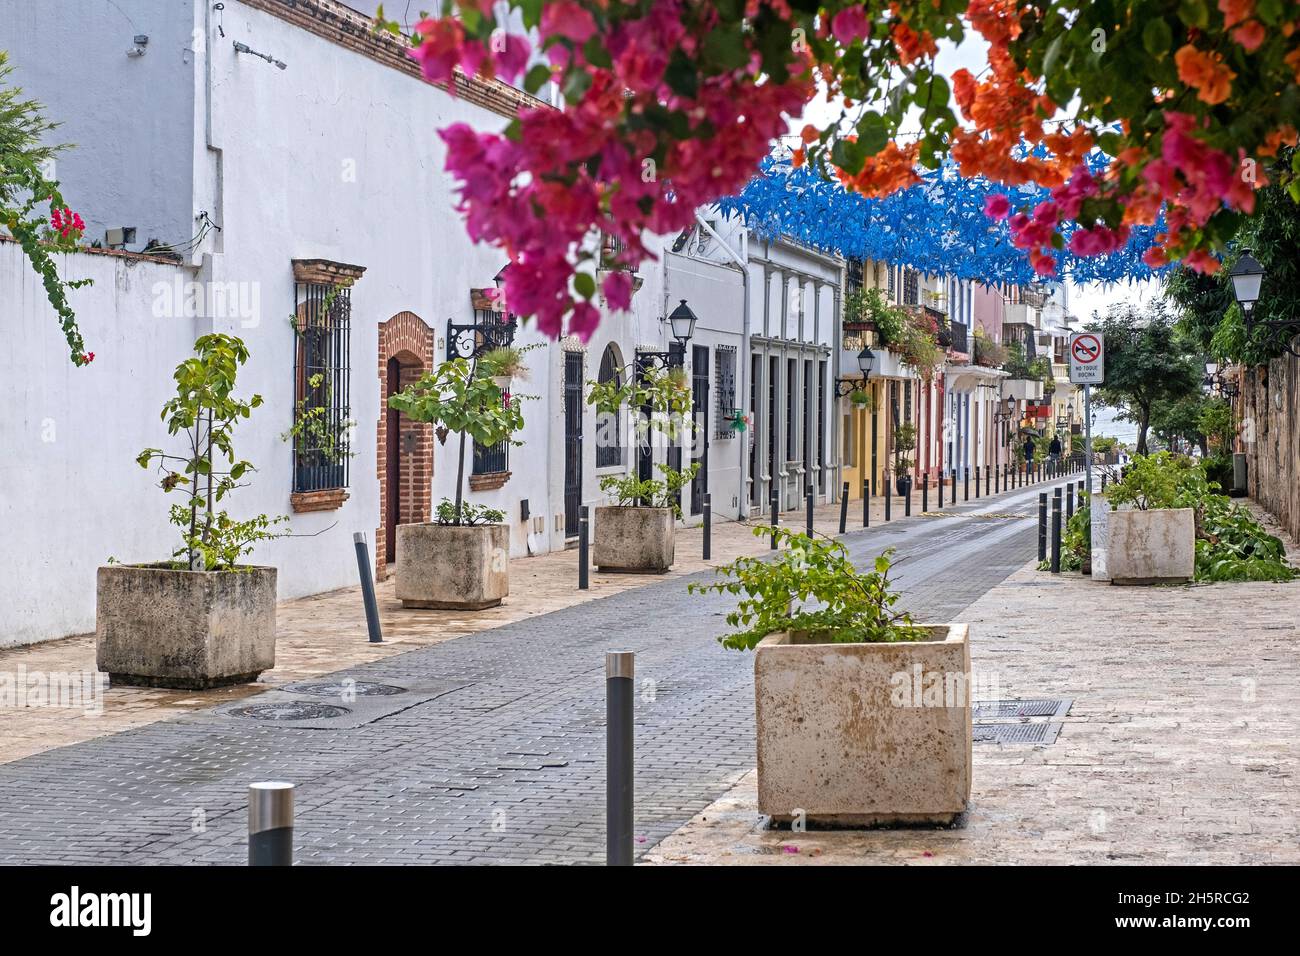 Rue à Ciudad Colonial, quartier historique espagnol dans la ville de Santo Domingo, République dominicaine, Hispaniola, grandes Antilles, Caraïbes Banque D'Images